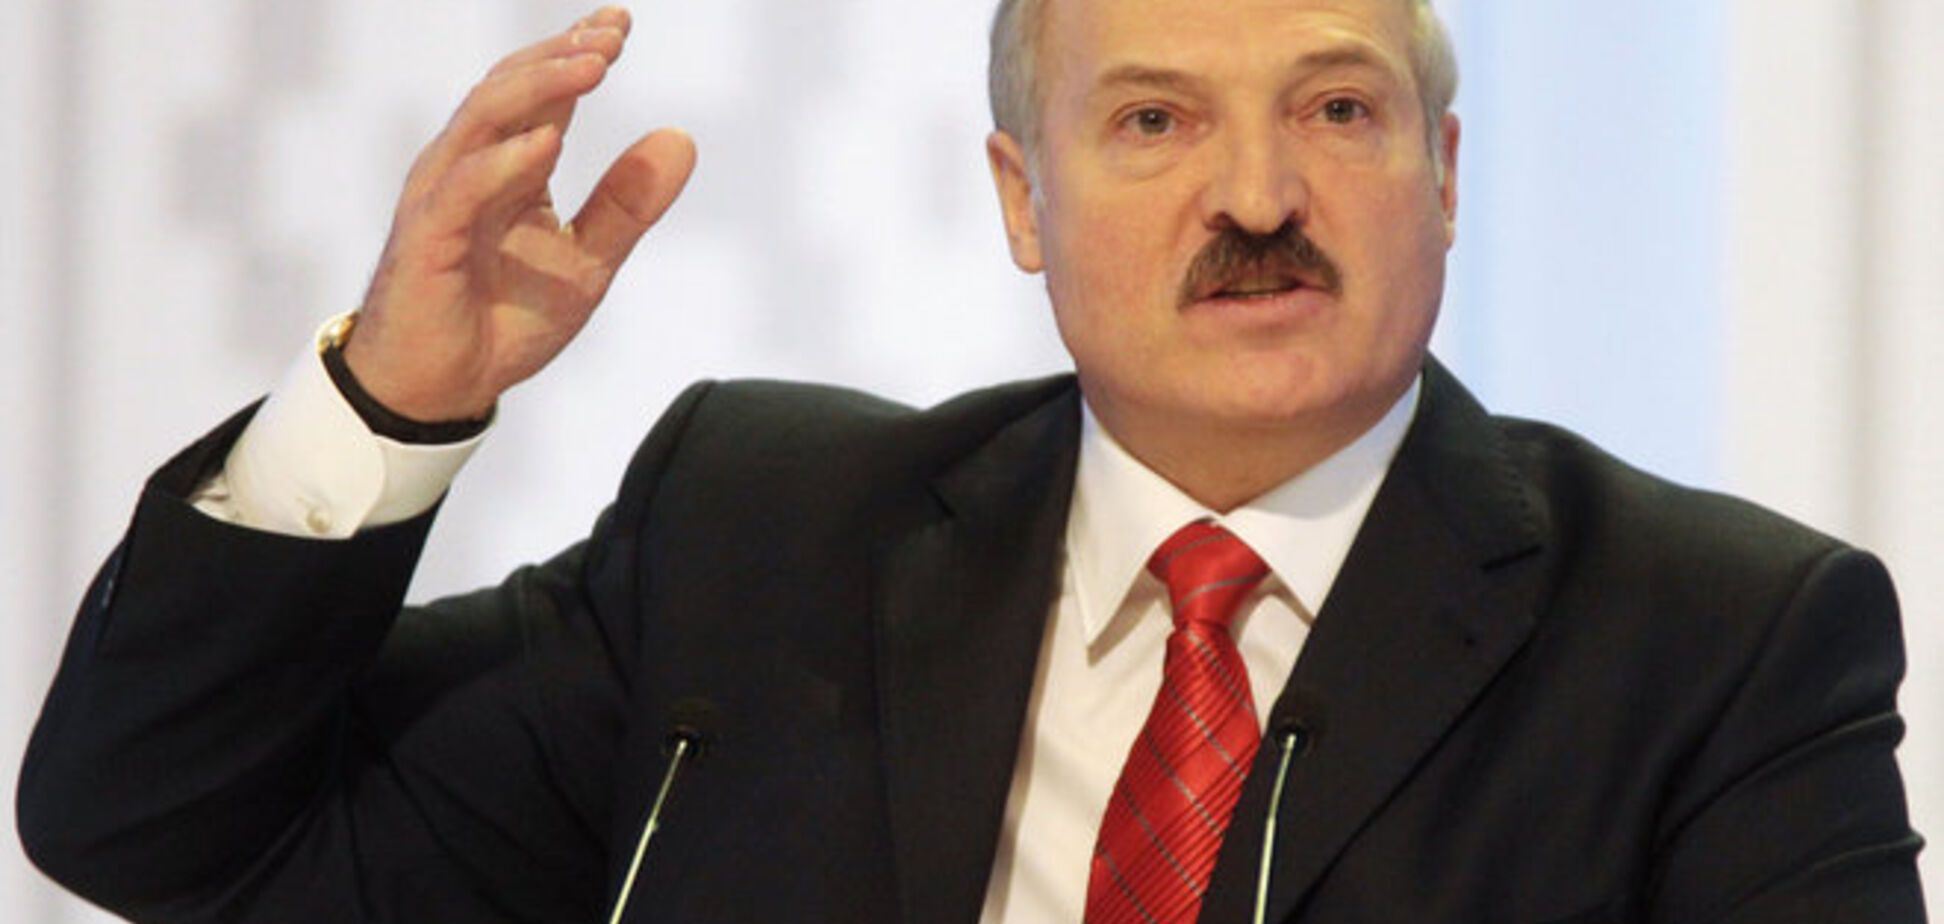 Лукашенко приказал своим спецслужбам найти пранкера Вована и отправить его 'на корм' - СМИ